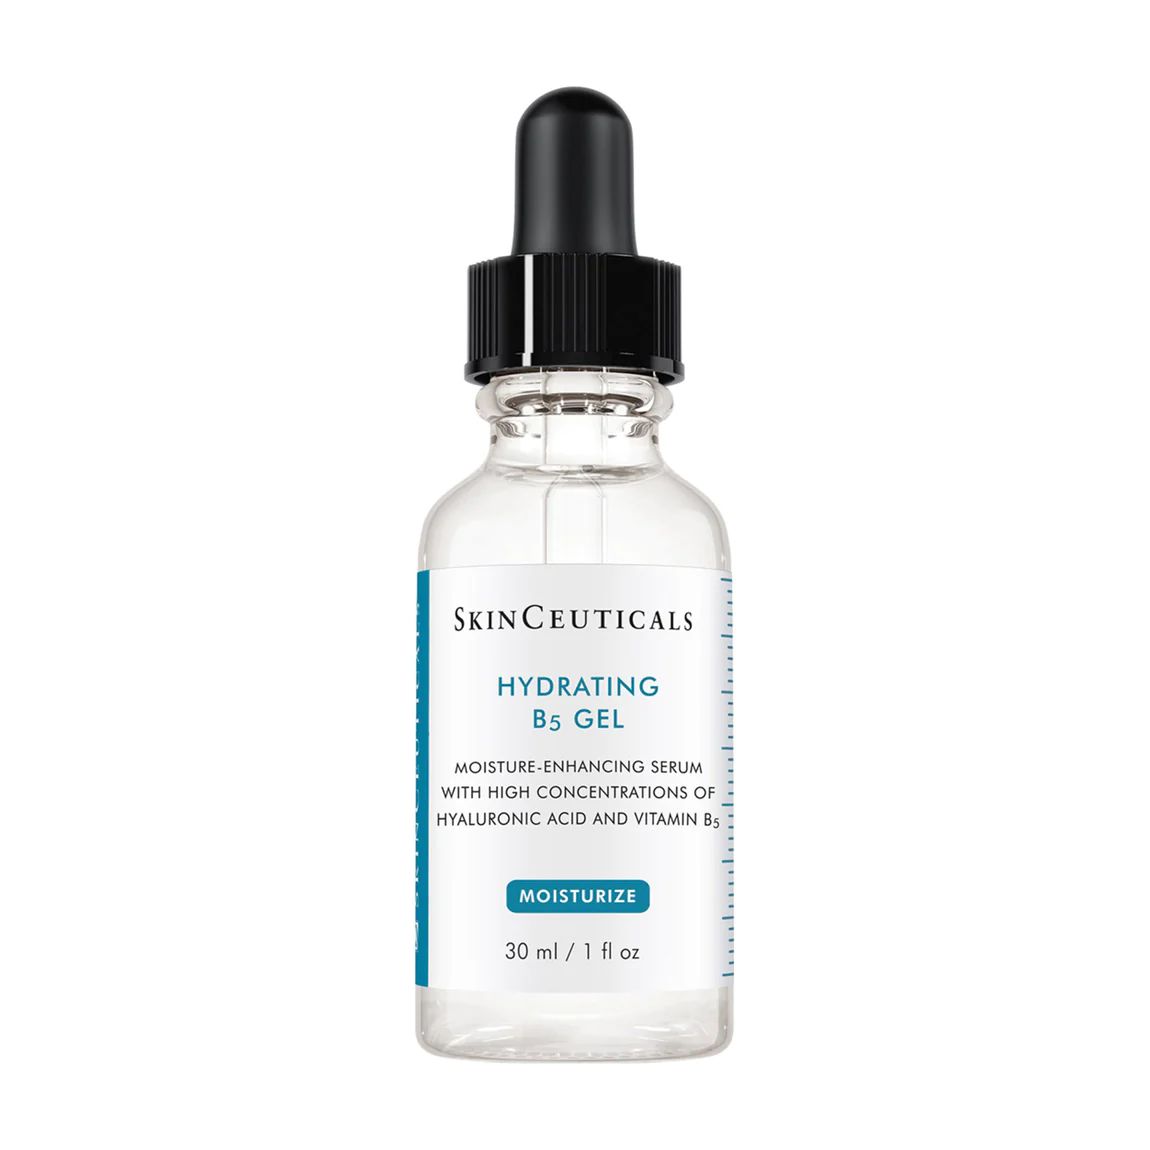 Hydrating B5 Gel | Bluemercury, Inc.